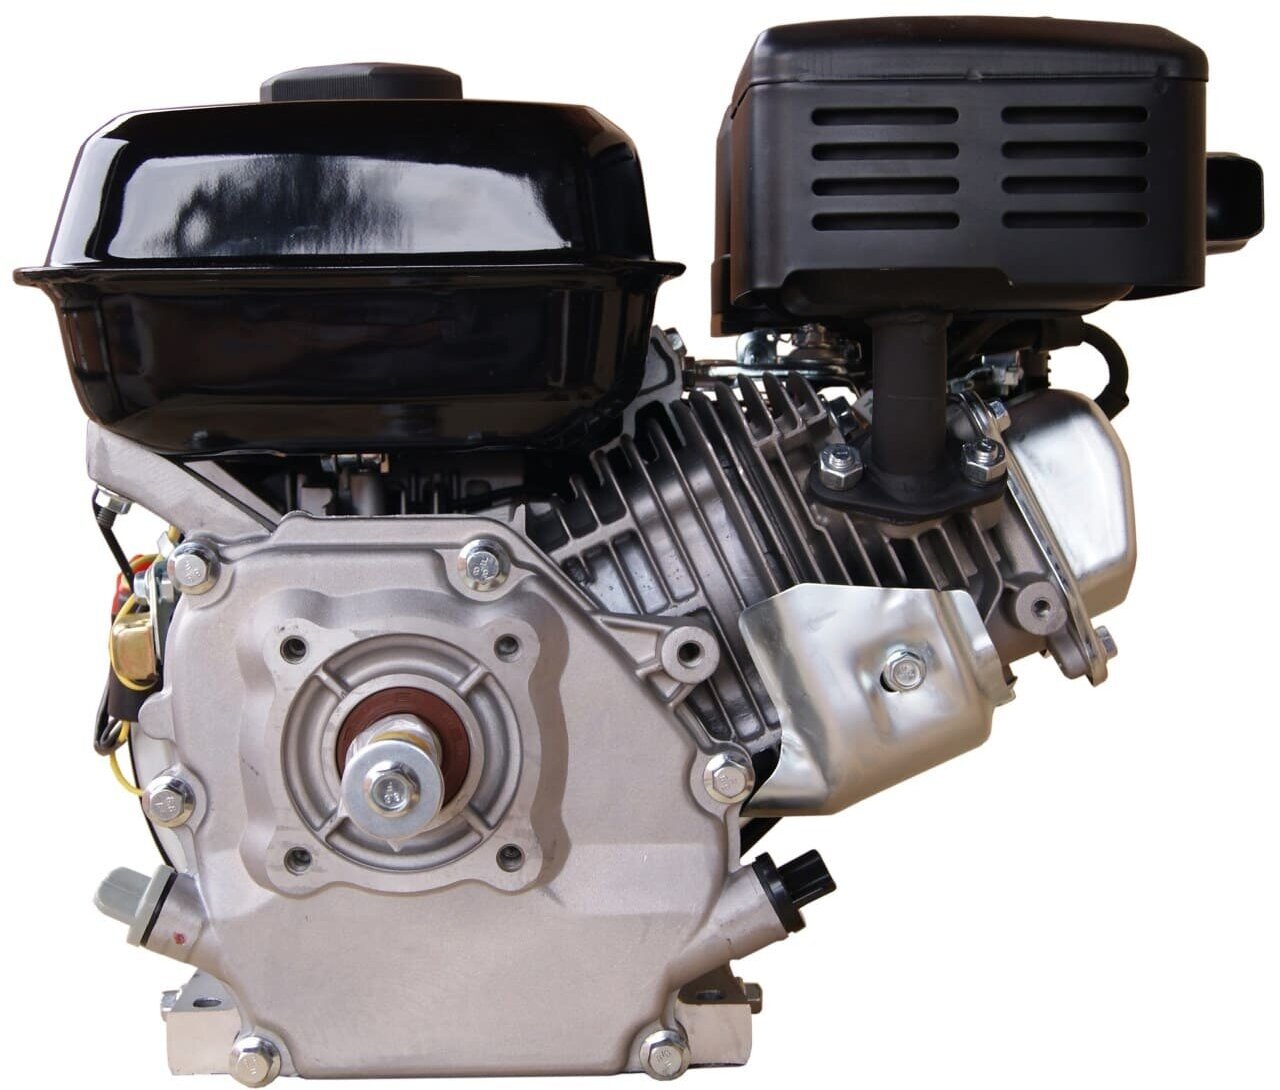 Двигатель бензиновый Lifan 170F (7 л с) 19мм